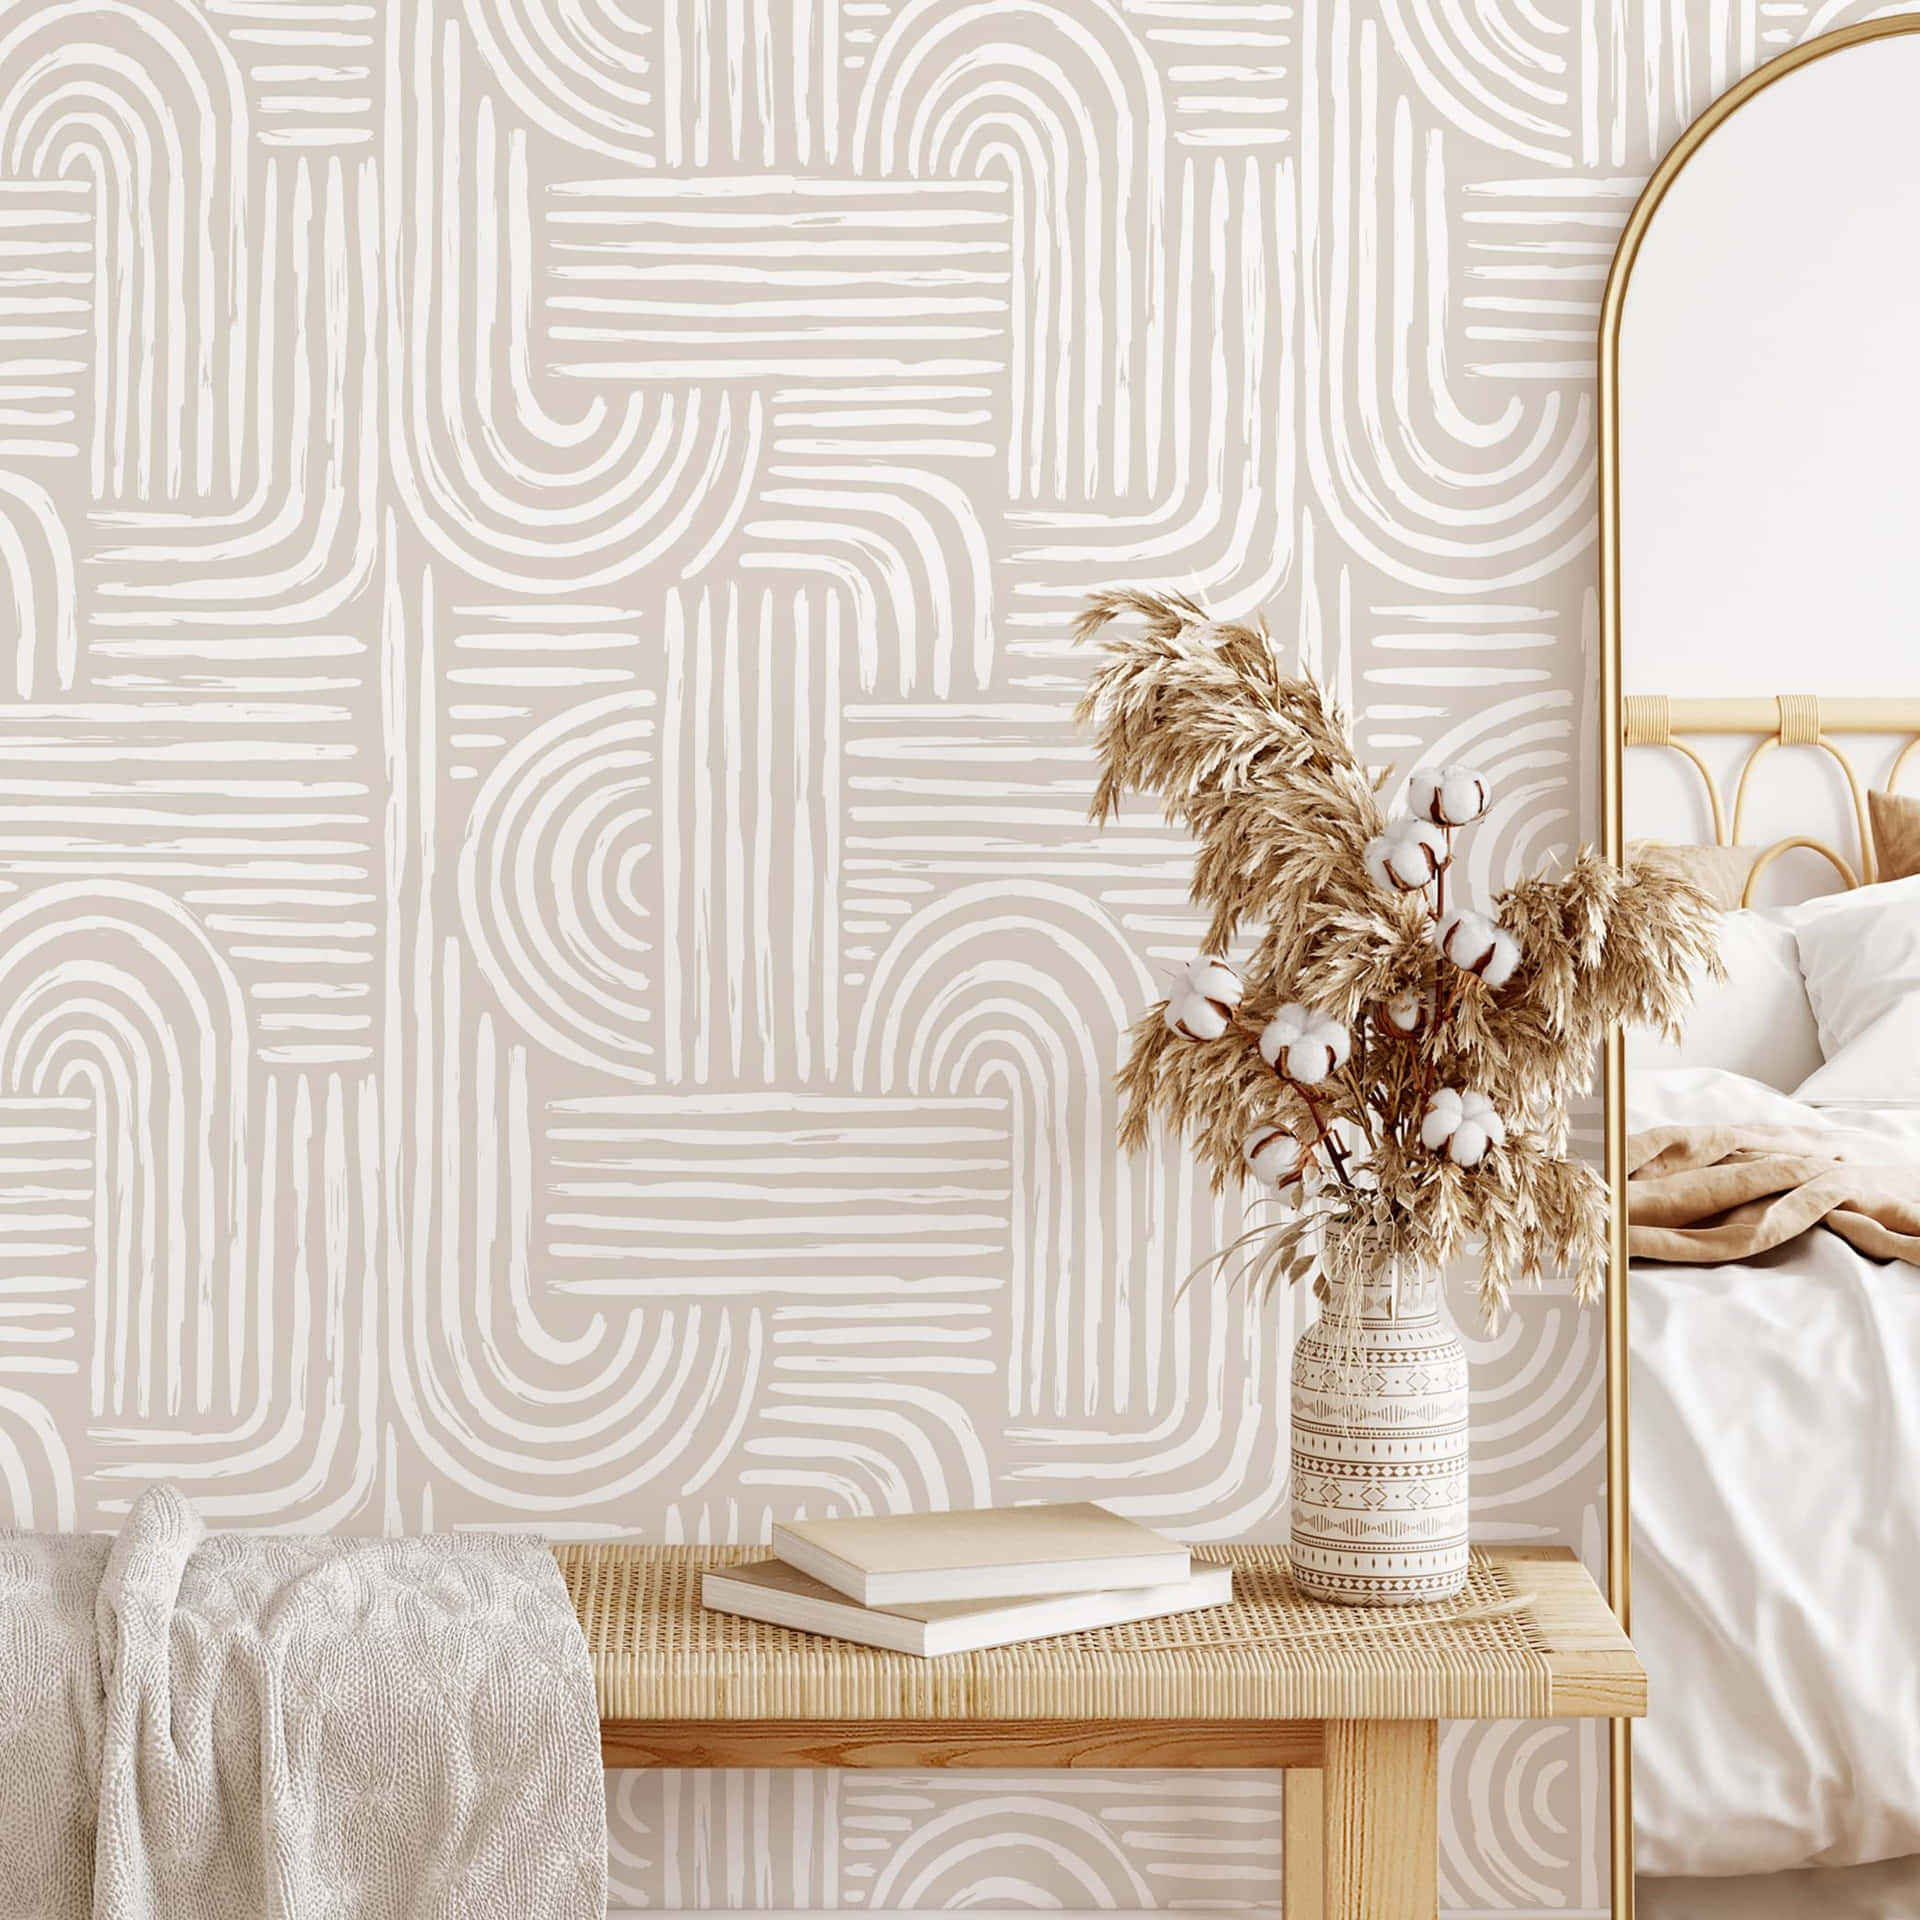 Scandinavian Style Bedroom Interior Wallpaper